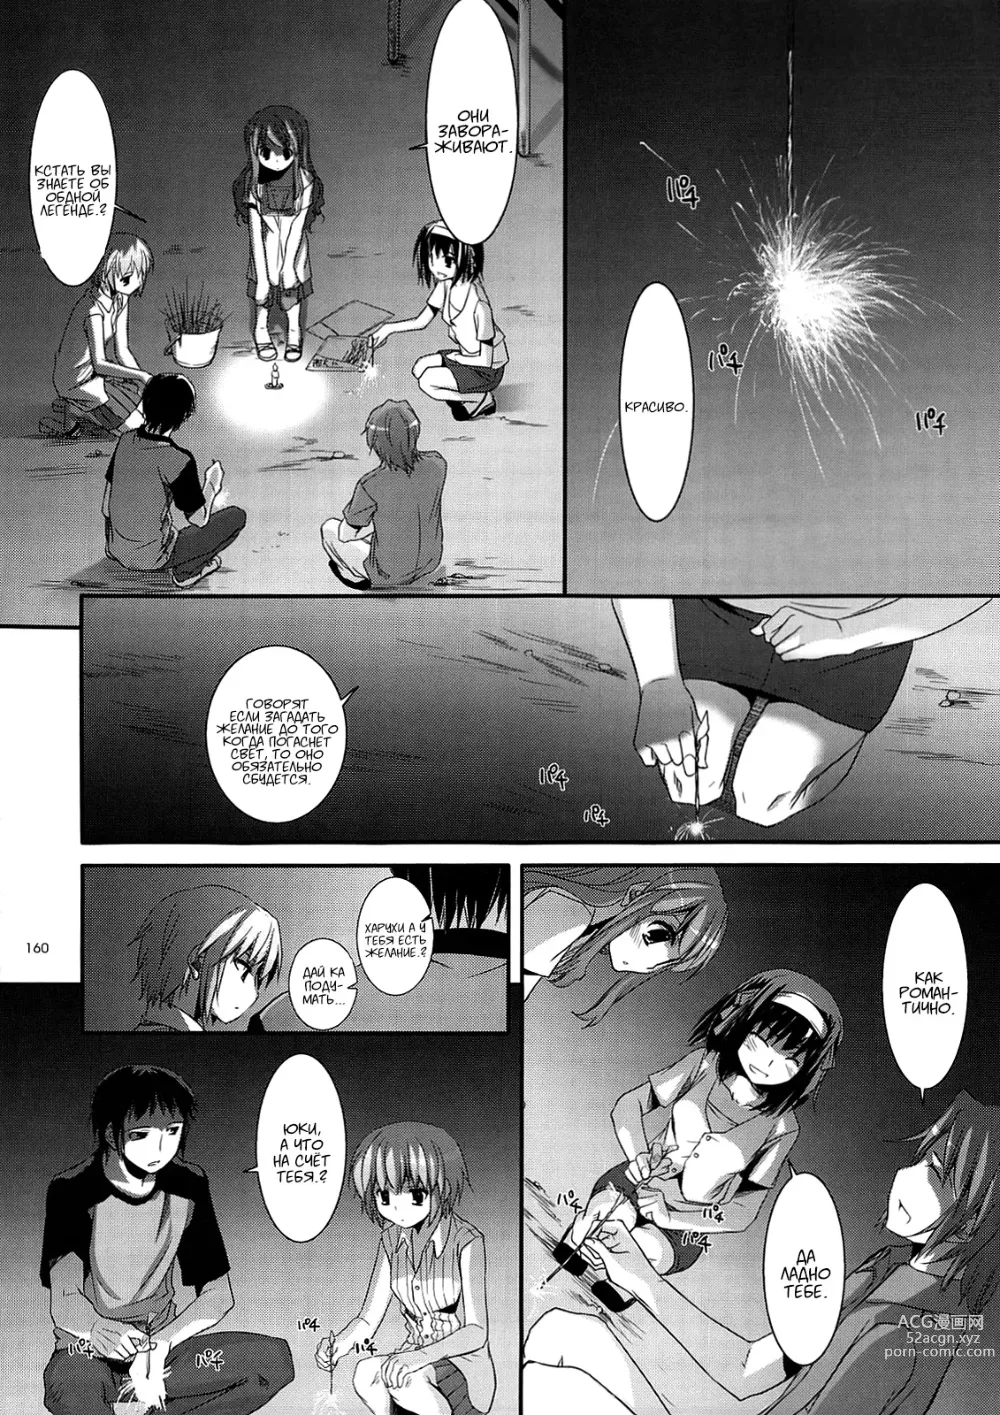 Page 159 of doujinshi DL-SOS Идеальная коллекция